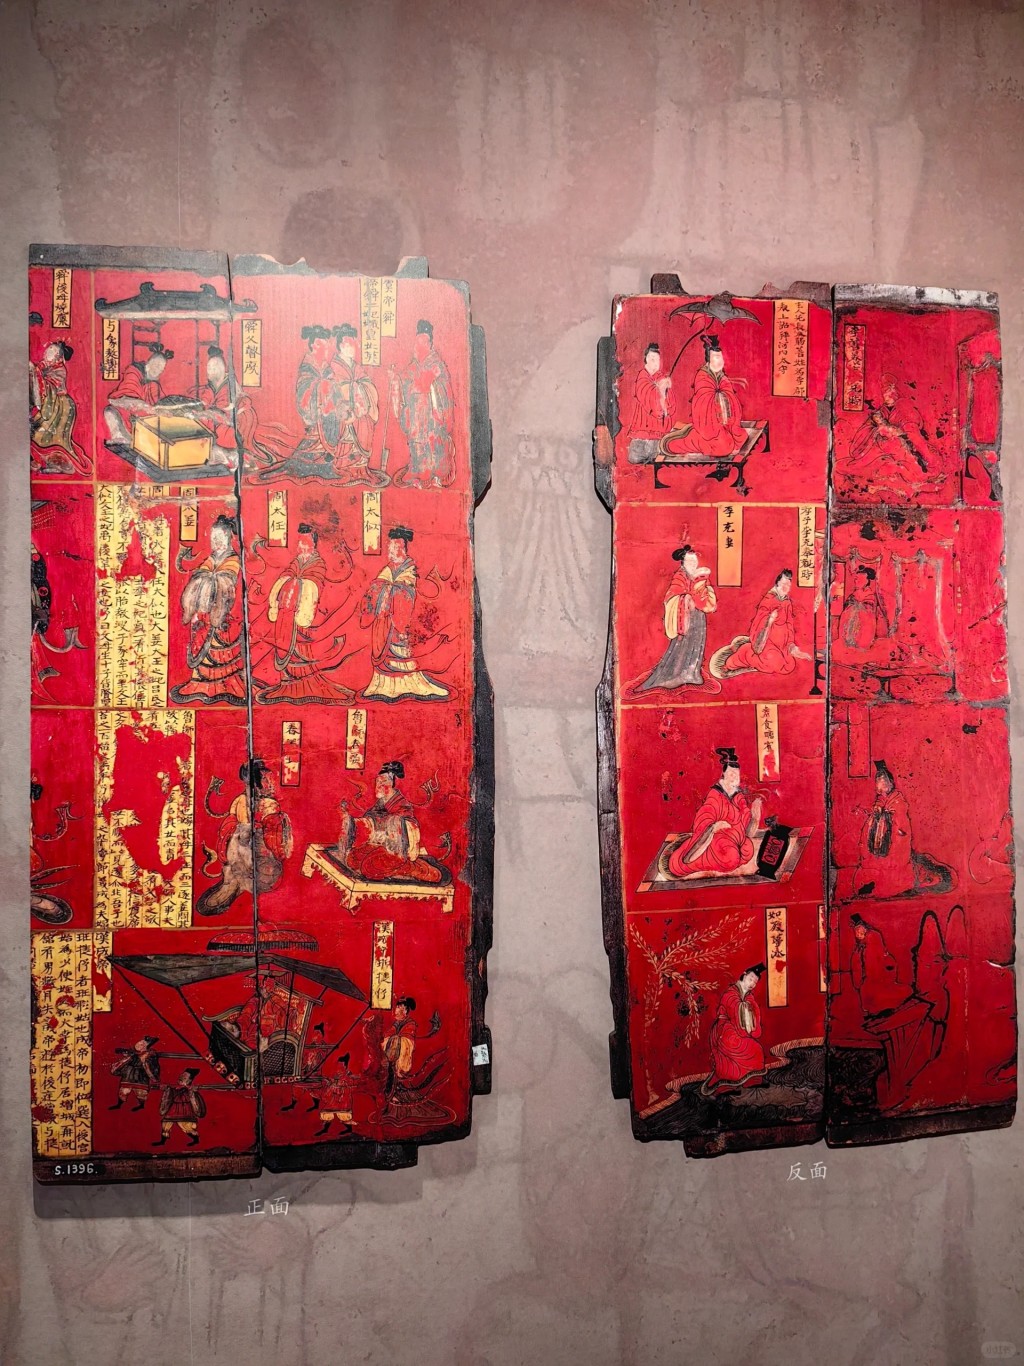 另外还有超过200件展品及北魏王朝文物珍品（图片来源：小红书）（图片来源：小红书）